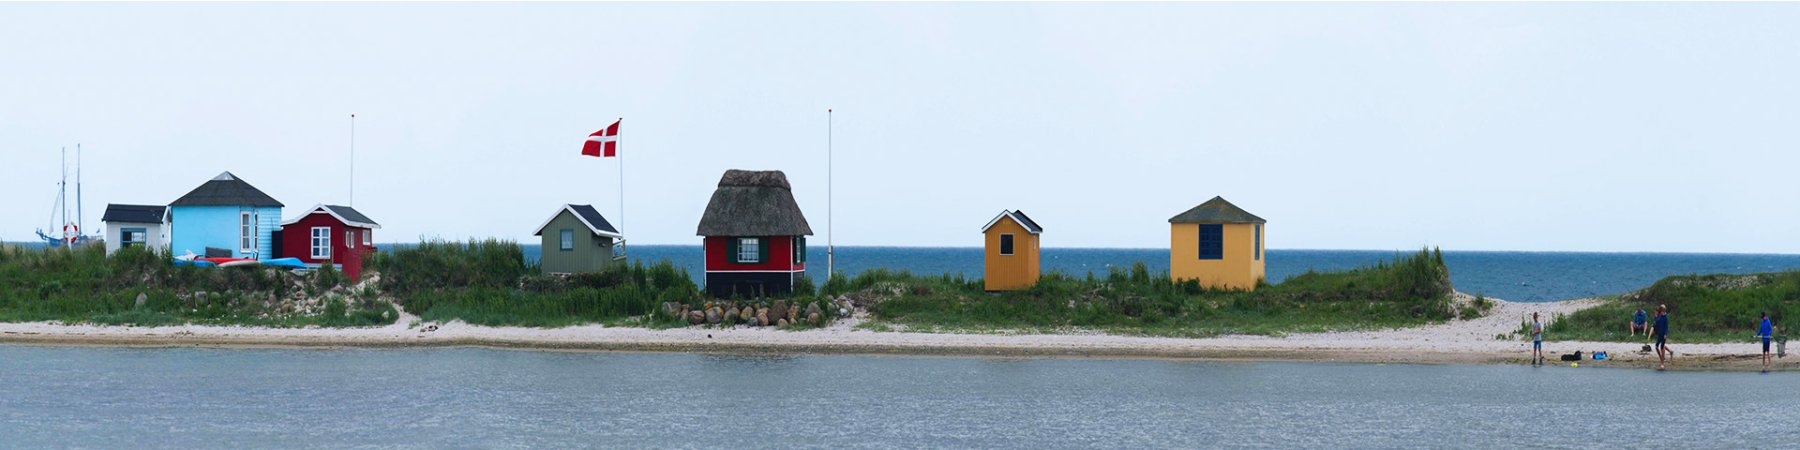 Ferienhaus Ärö - Buche jetzt dein Traumhaus auf der Insel Ærø